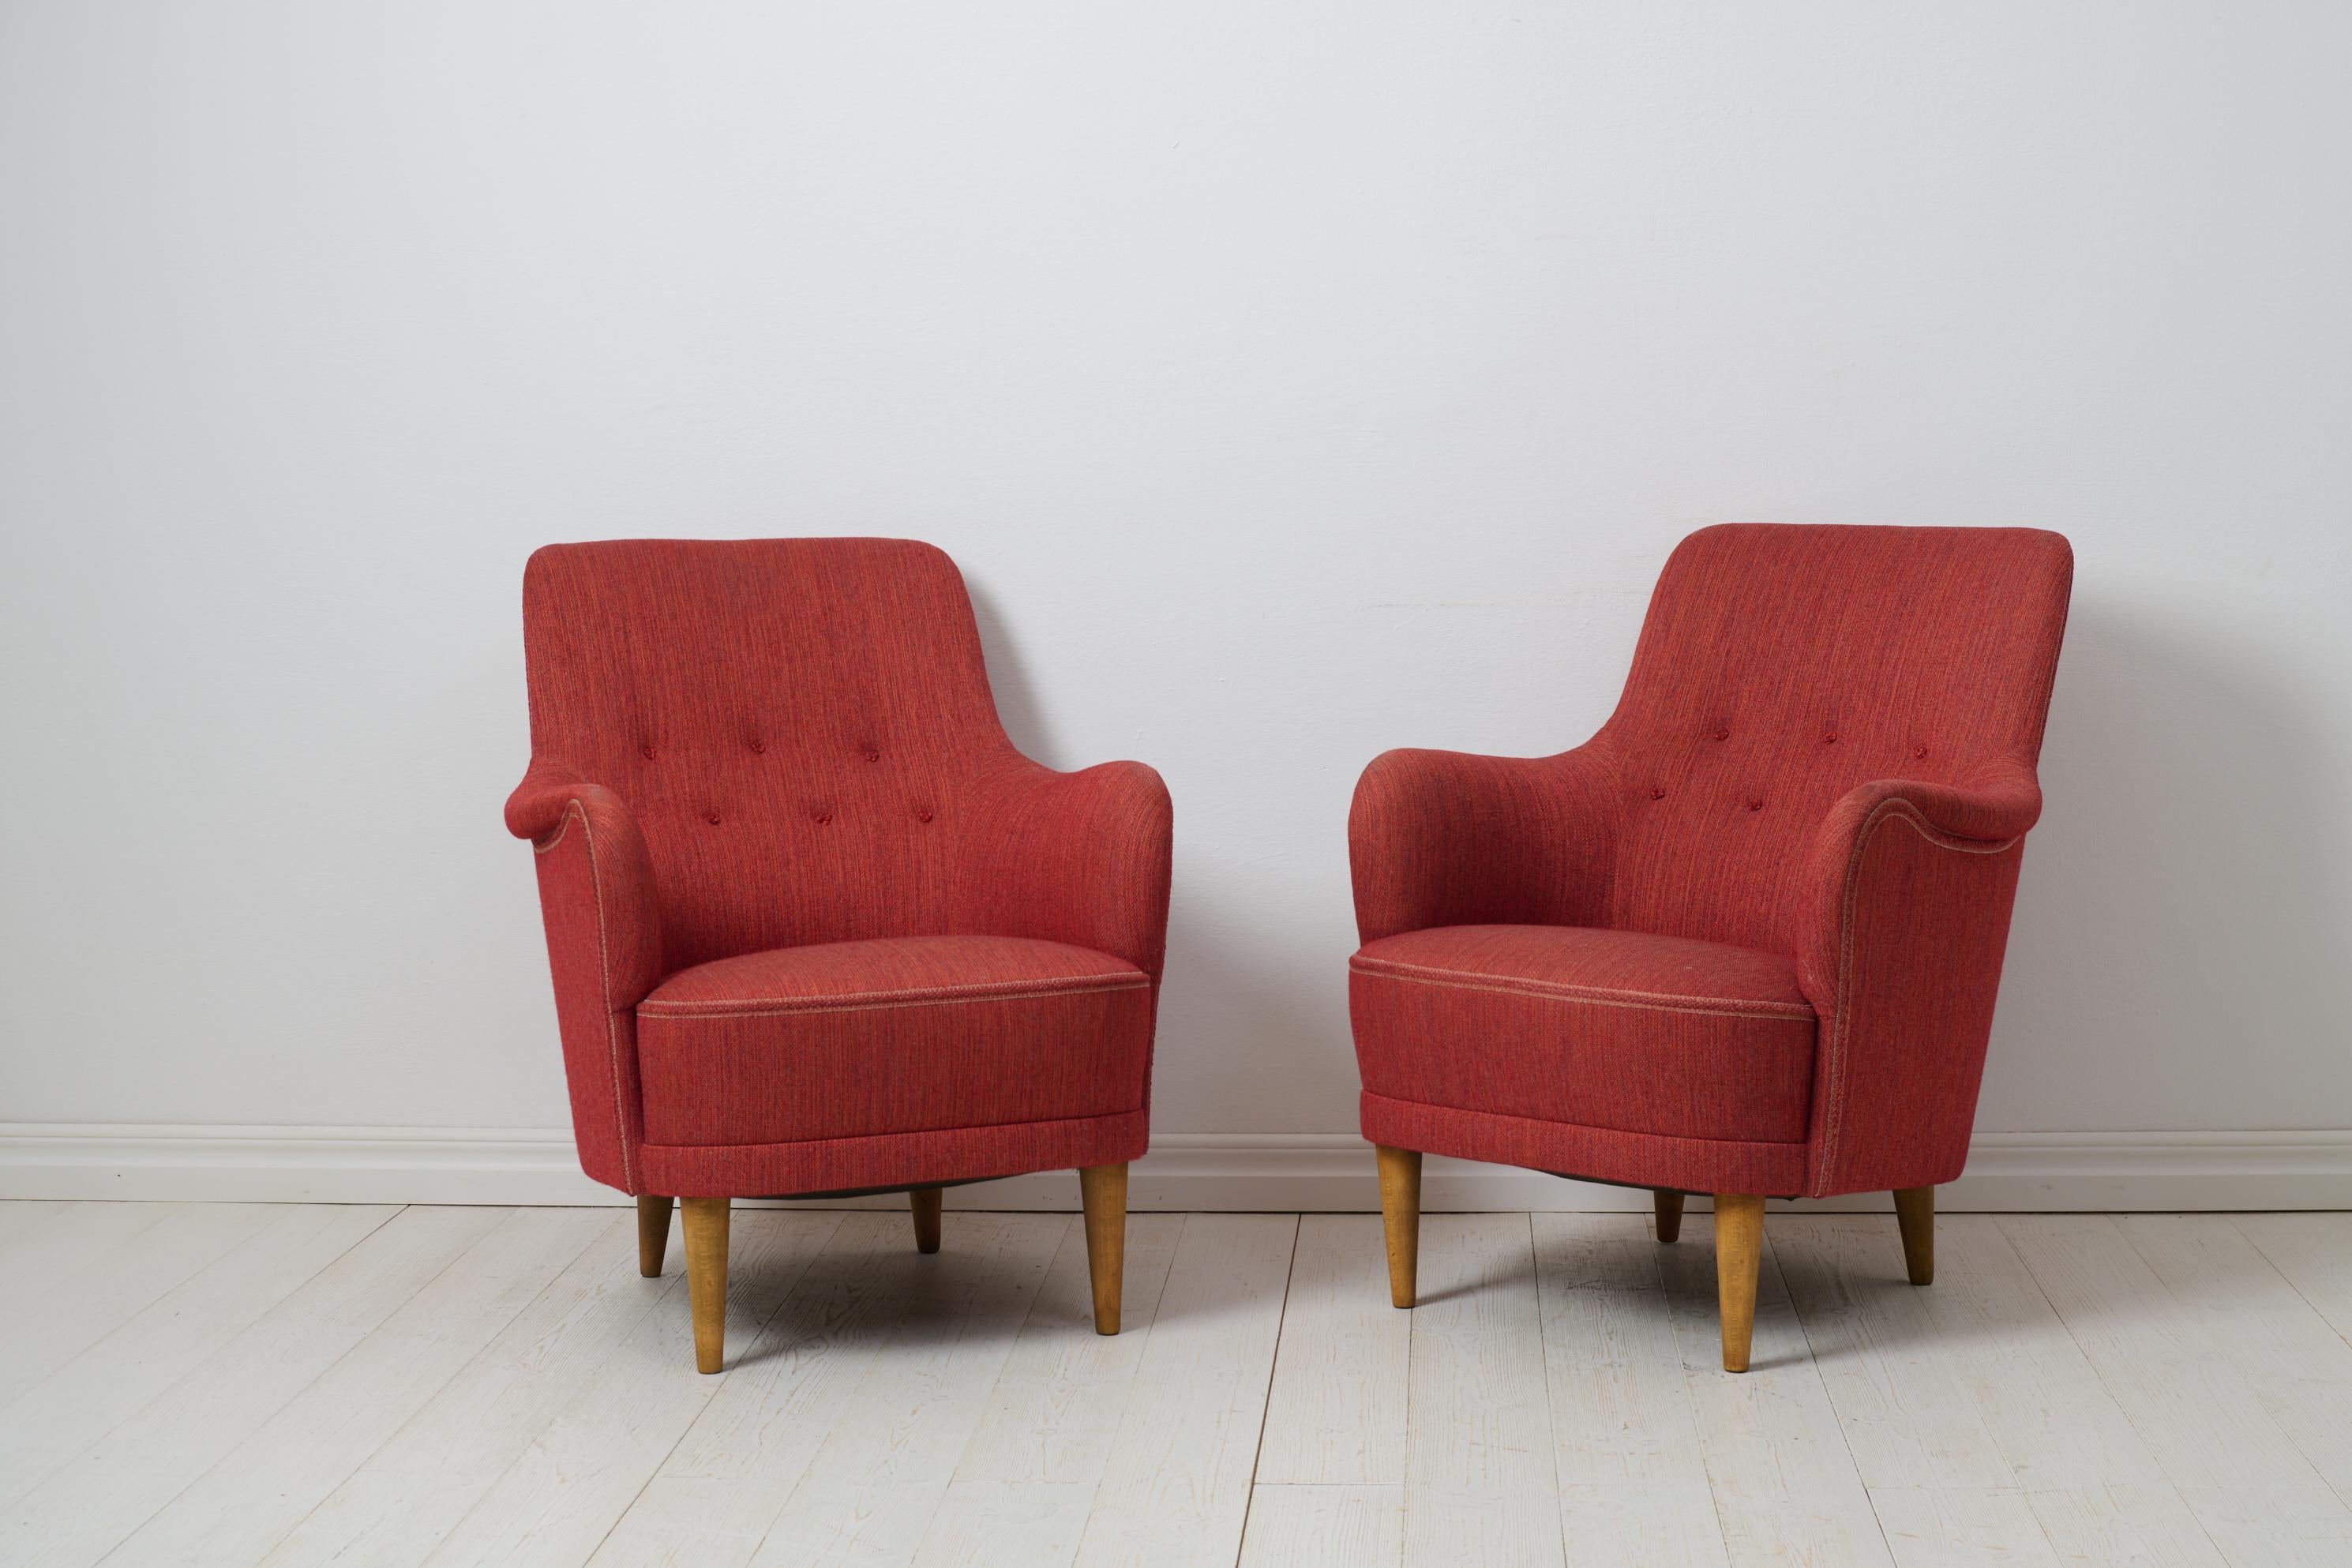 Carl Malmsten Samsas Sessel für O.H. Sjögren aus der Mitte des 20. Jahrhunderts. Die Stühle sind ein moderner schwedischer Klassiker und die Samsas-Serie gilt heute als das charakteristischste Design von Malmsten. Der Sessel Samsas ist ein Favorit